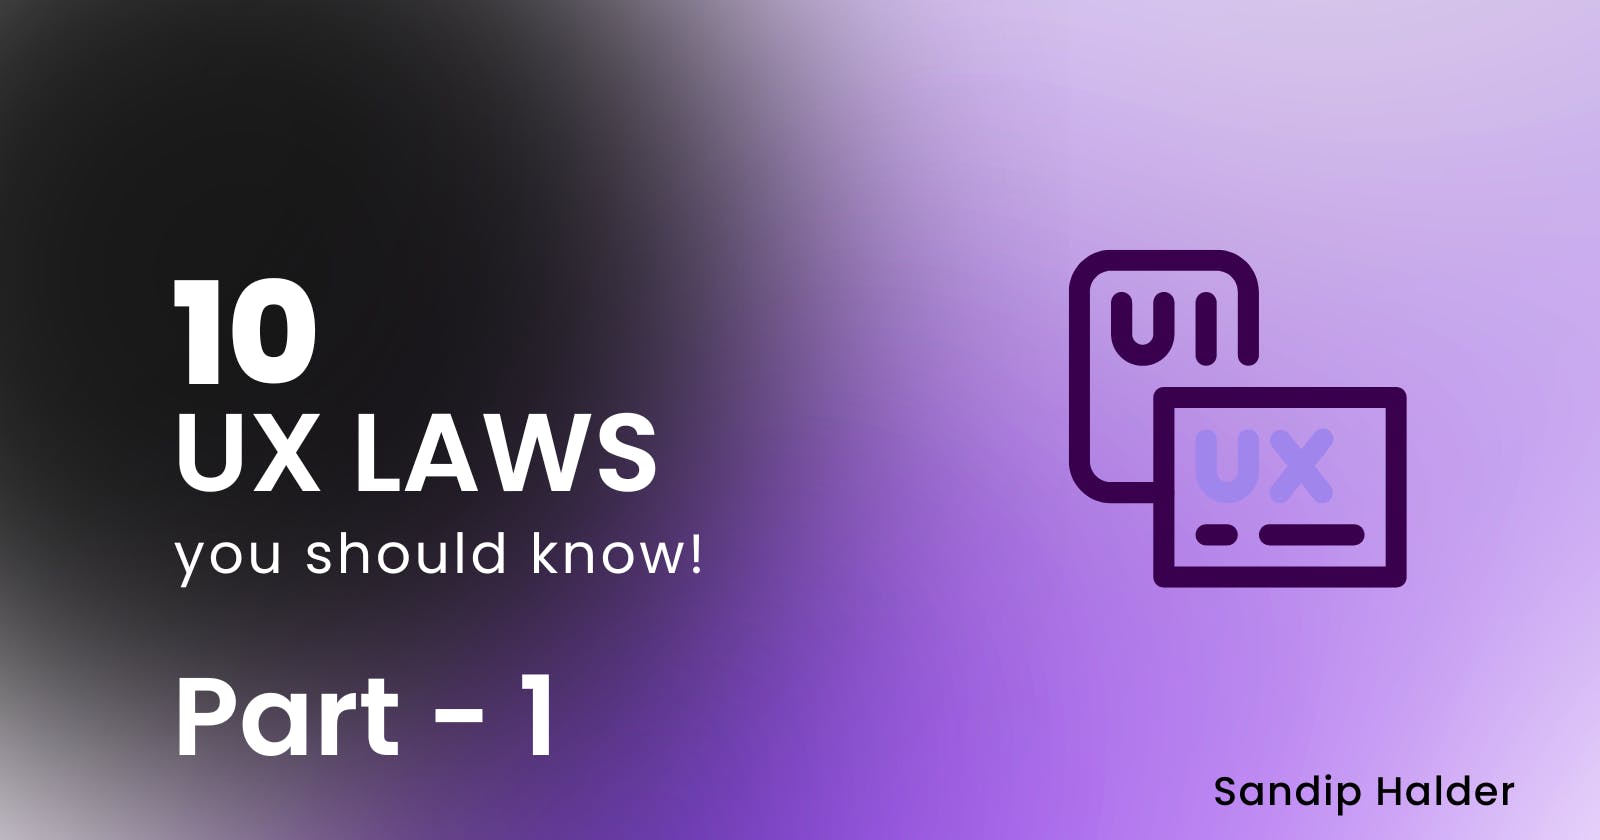 10 UX LAWS YOU SHOULD KNOW! Part 1